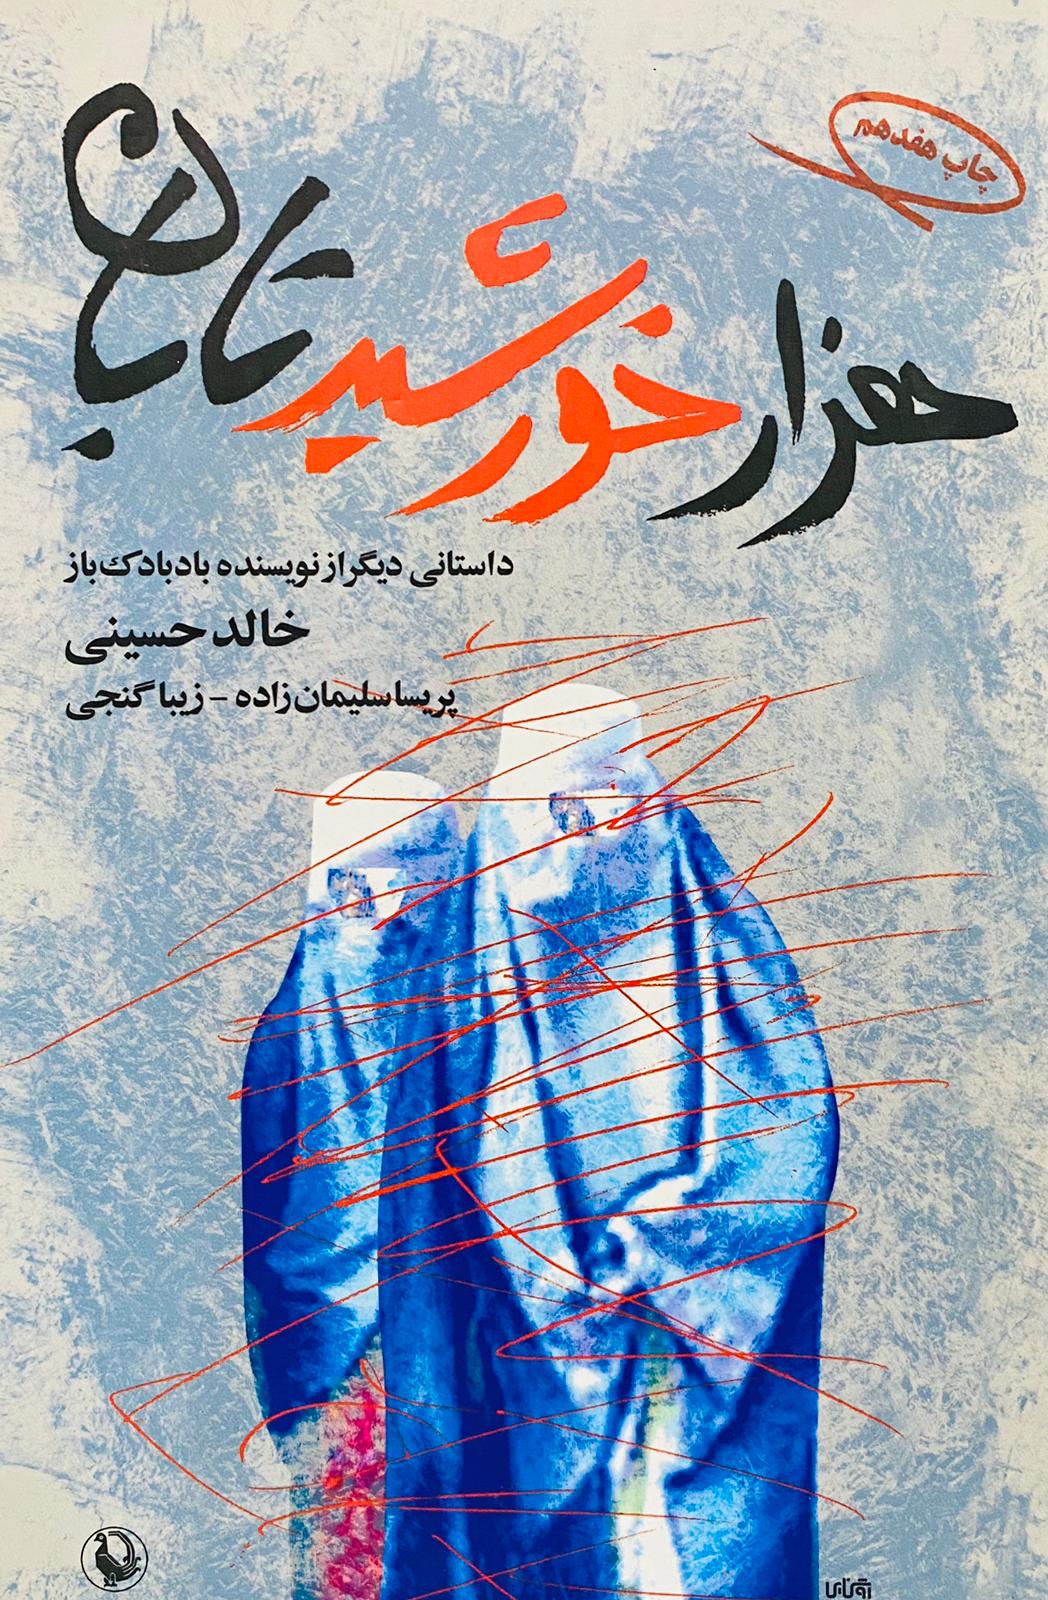 کتاب هزار خورشید تابان نوشته خالد حسینی